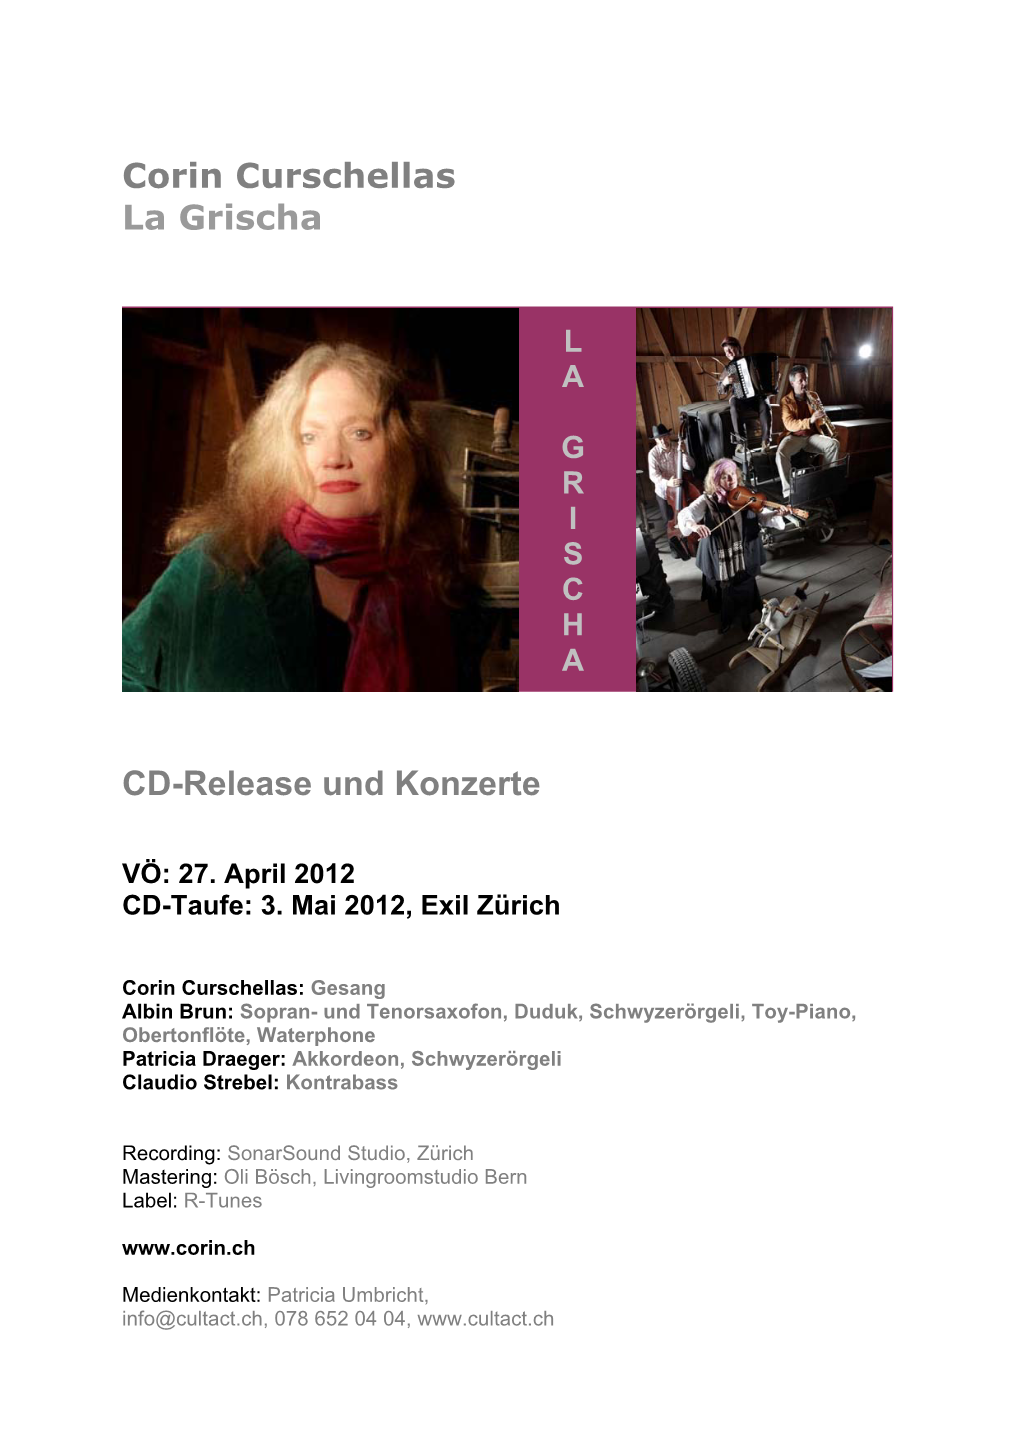 Corin Curschellas La Grischa CD-Release Und Konzerte